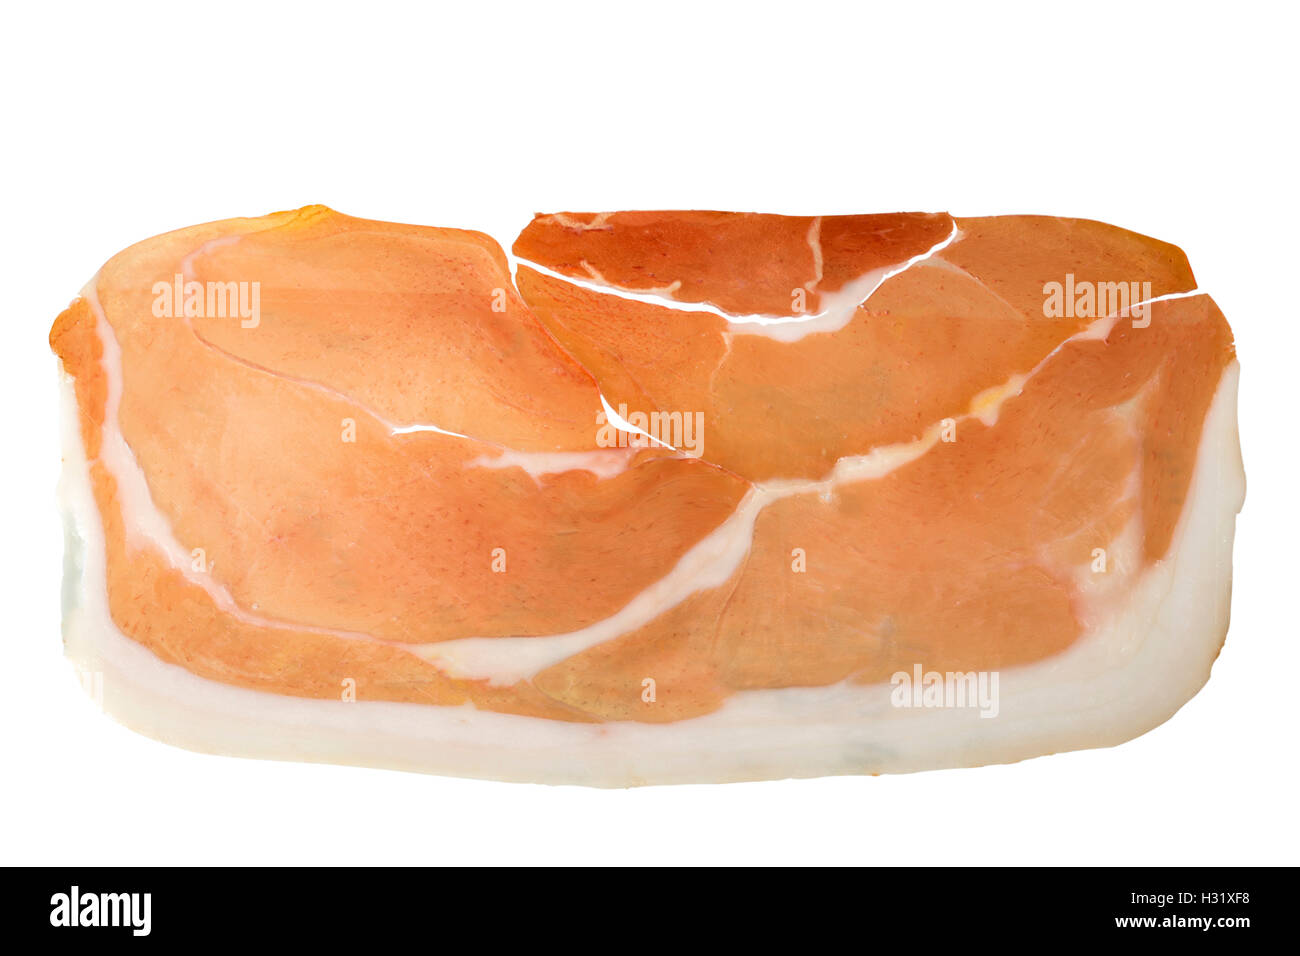 Trocknen Sie mit Clipping-Pfad enthalten geheilt geräucherte Schweinefleisch Schinken Schinken Scheibe isoliert auf weißem Hintergrund Stockfoto